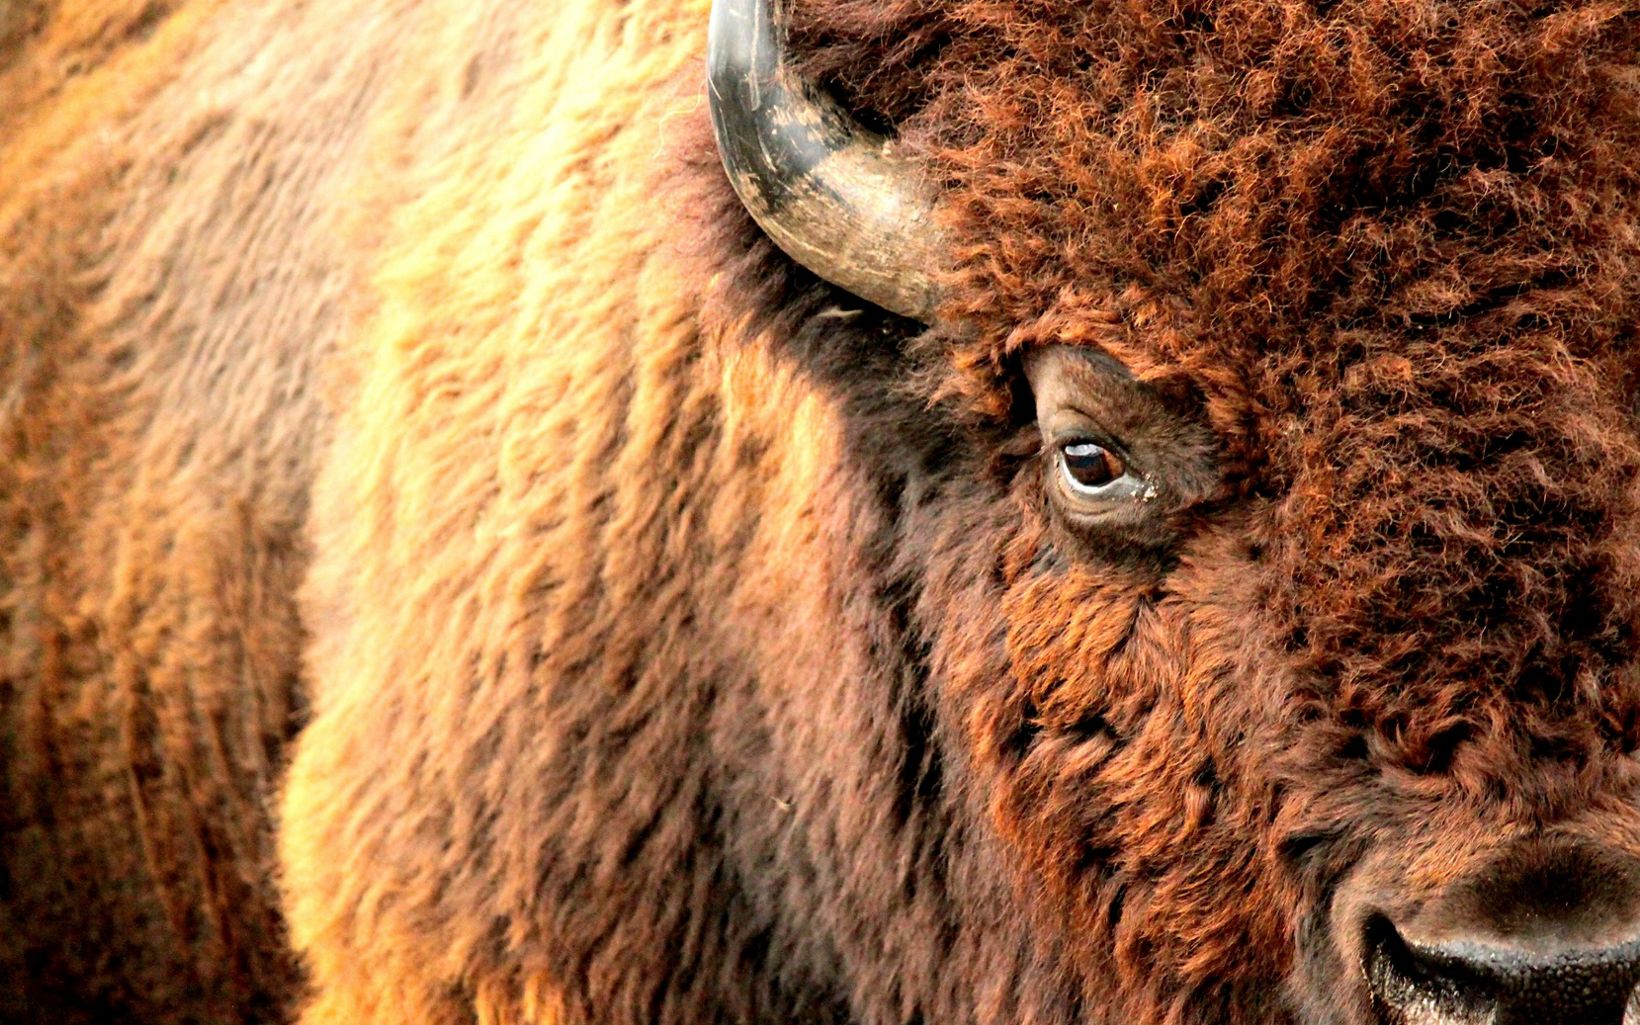 Bison Grassland habitat supports a variety of wildlife, including free-roaming bison. © Josie Briggs